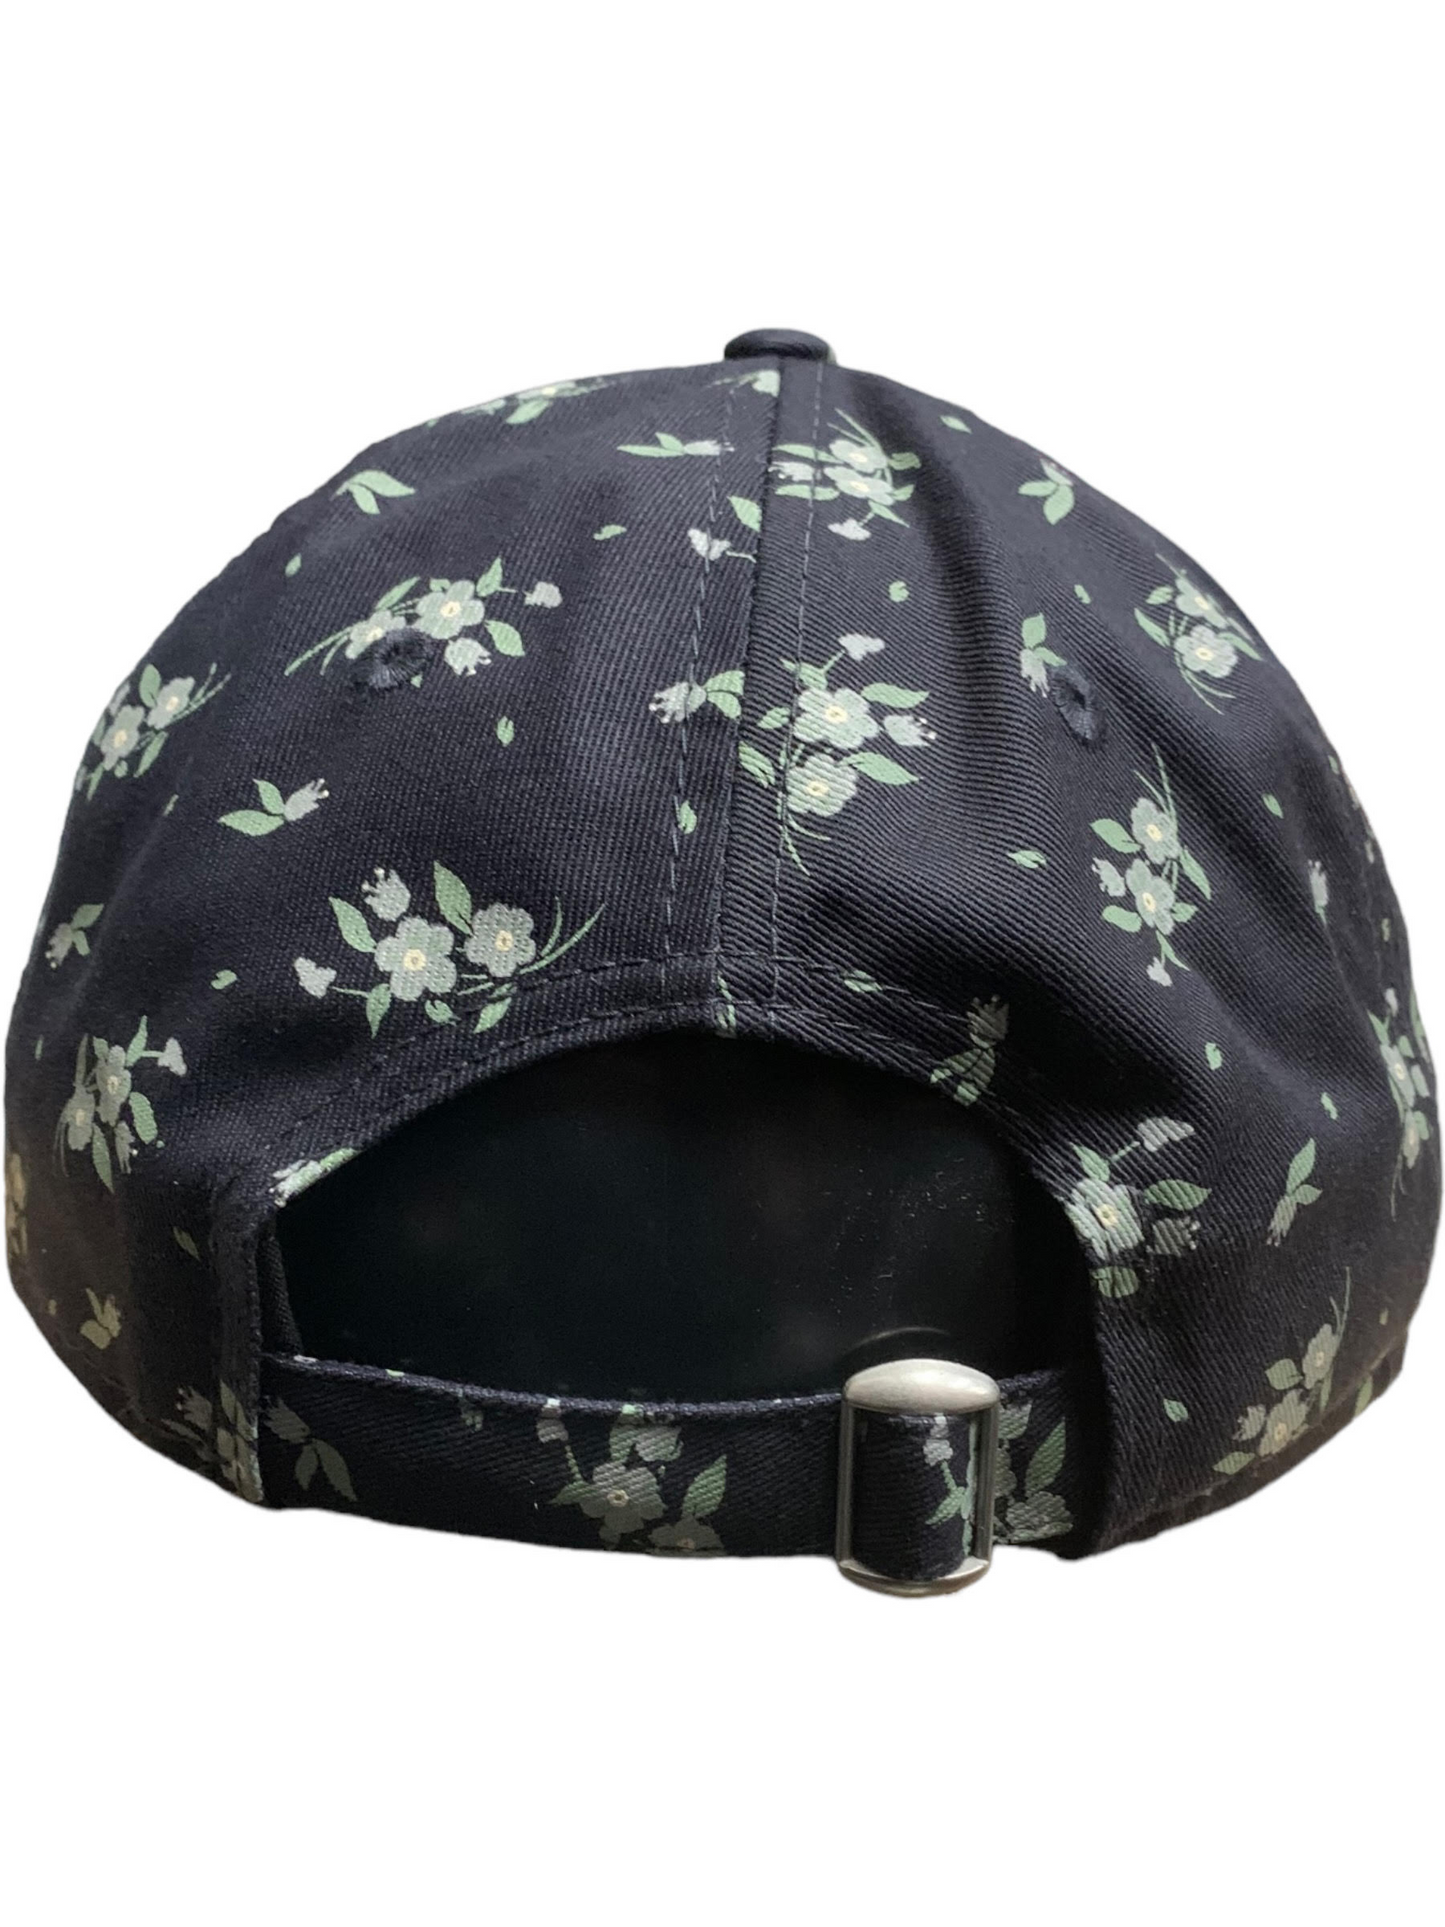 New York Yankees Women's Bloom 9TWENTY Adjustable Hat